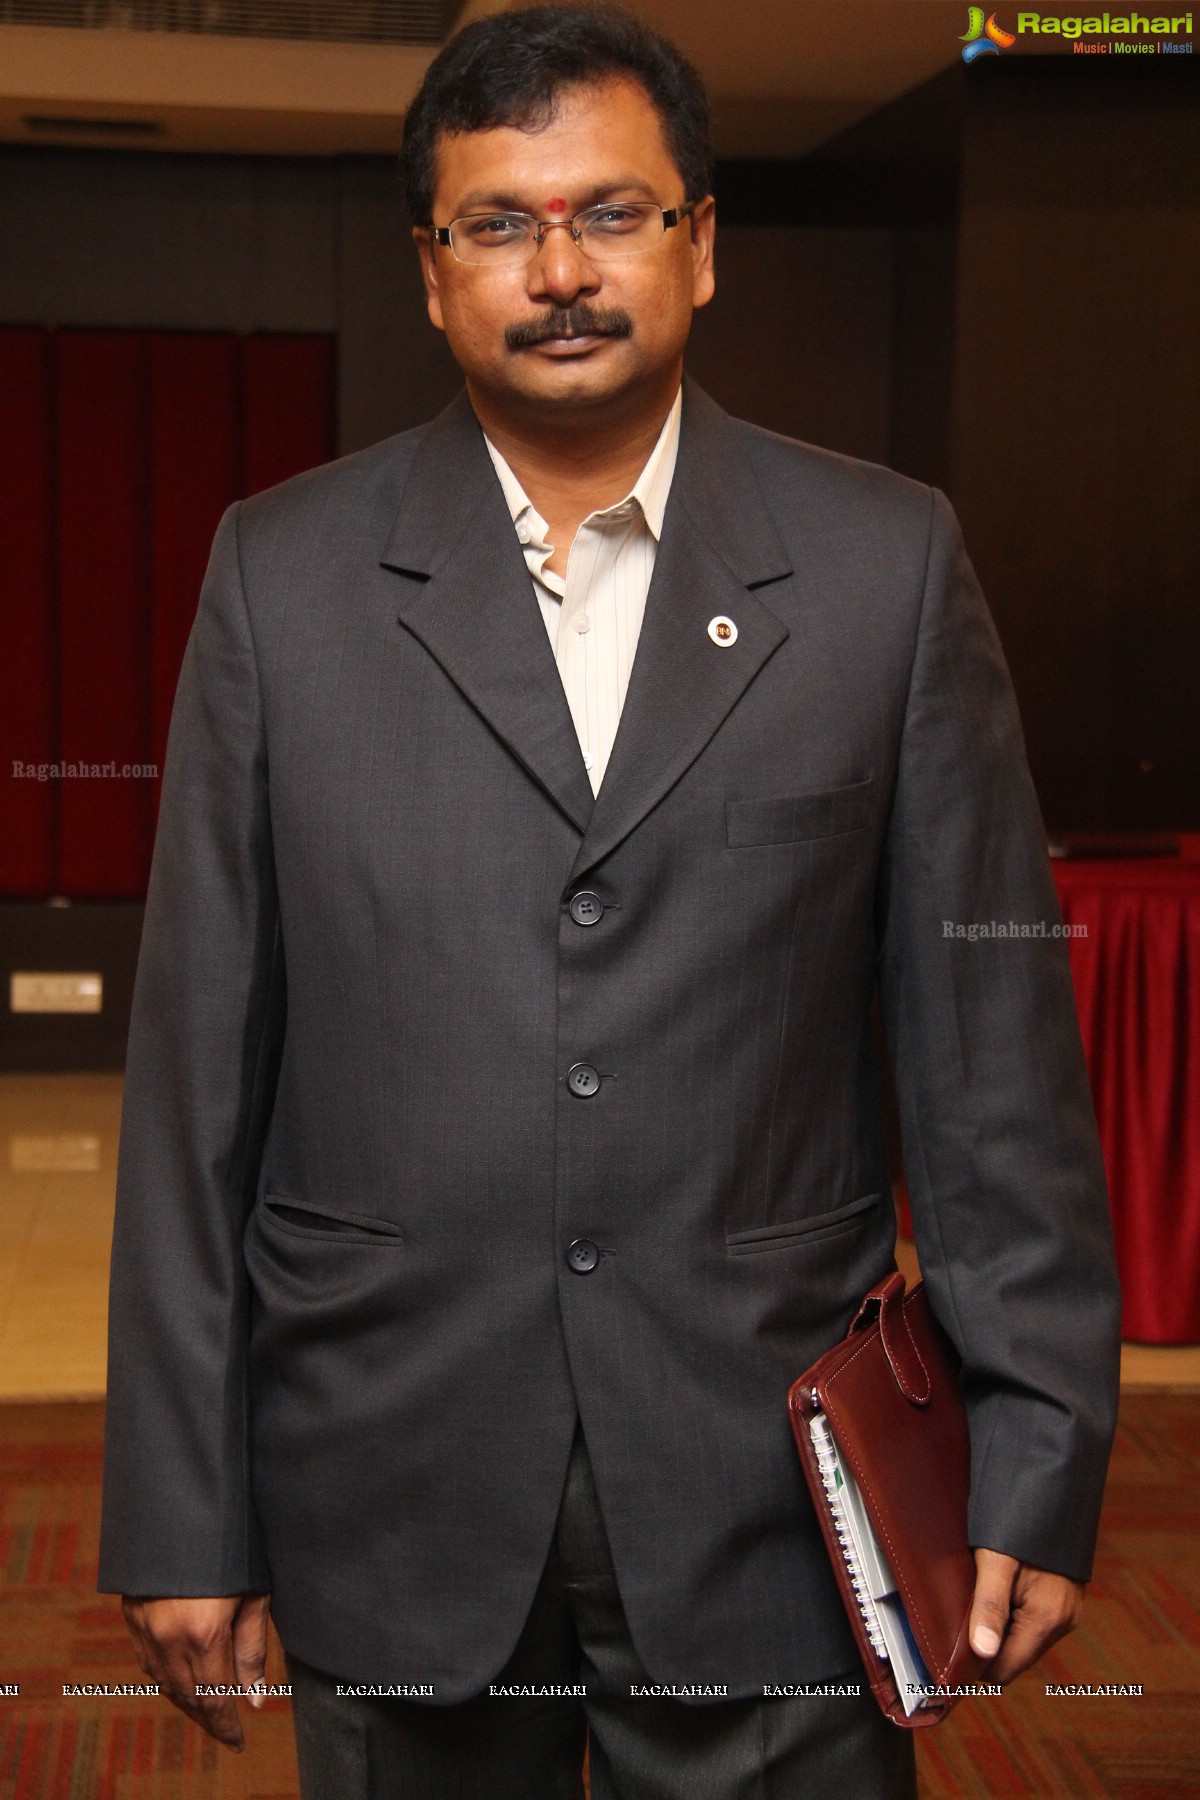 BNI Kohinoor Meet at Jalpaan, Hyderabad (Sep. 10, 2014)